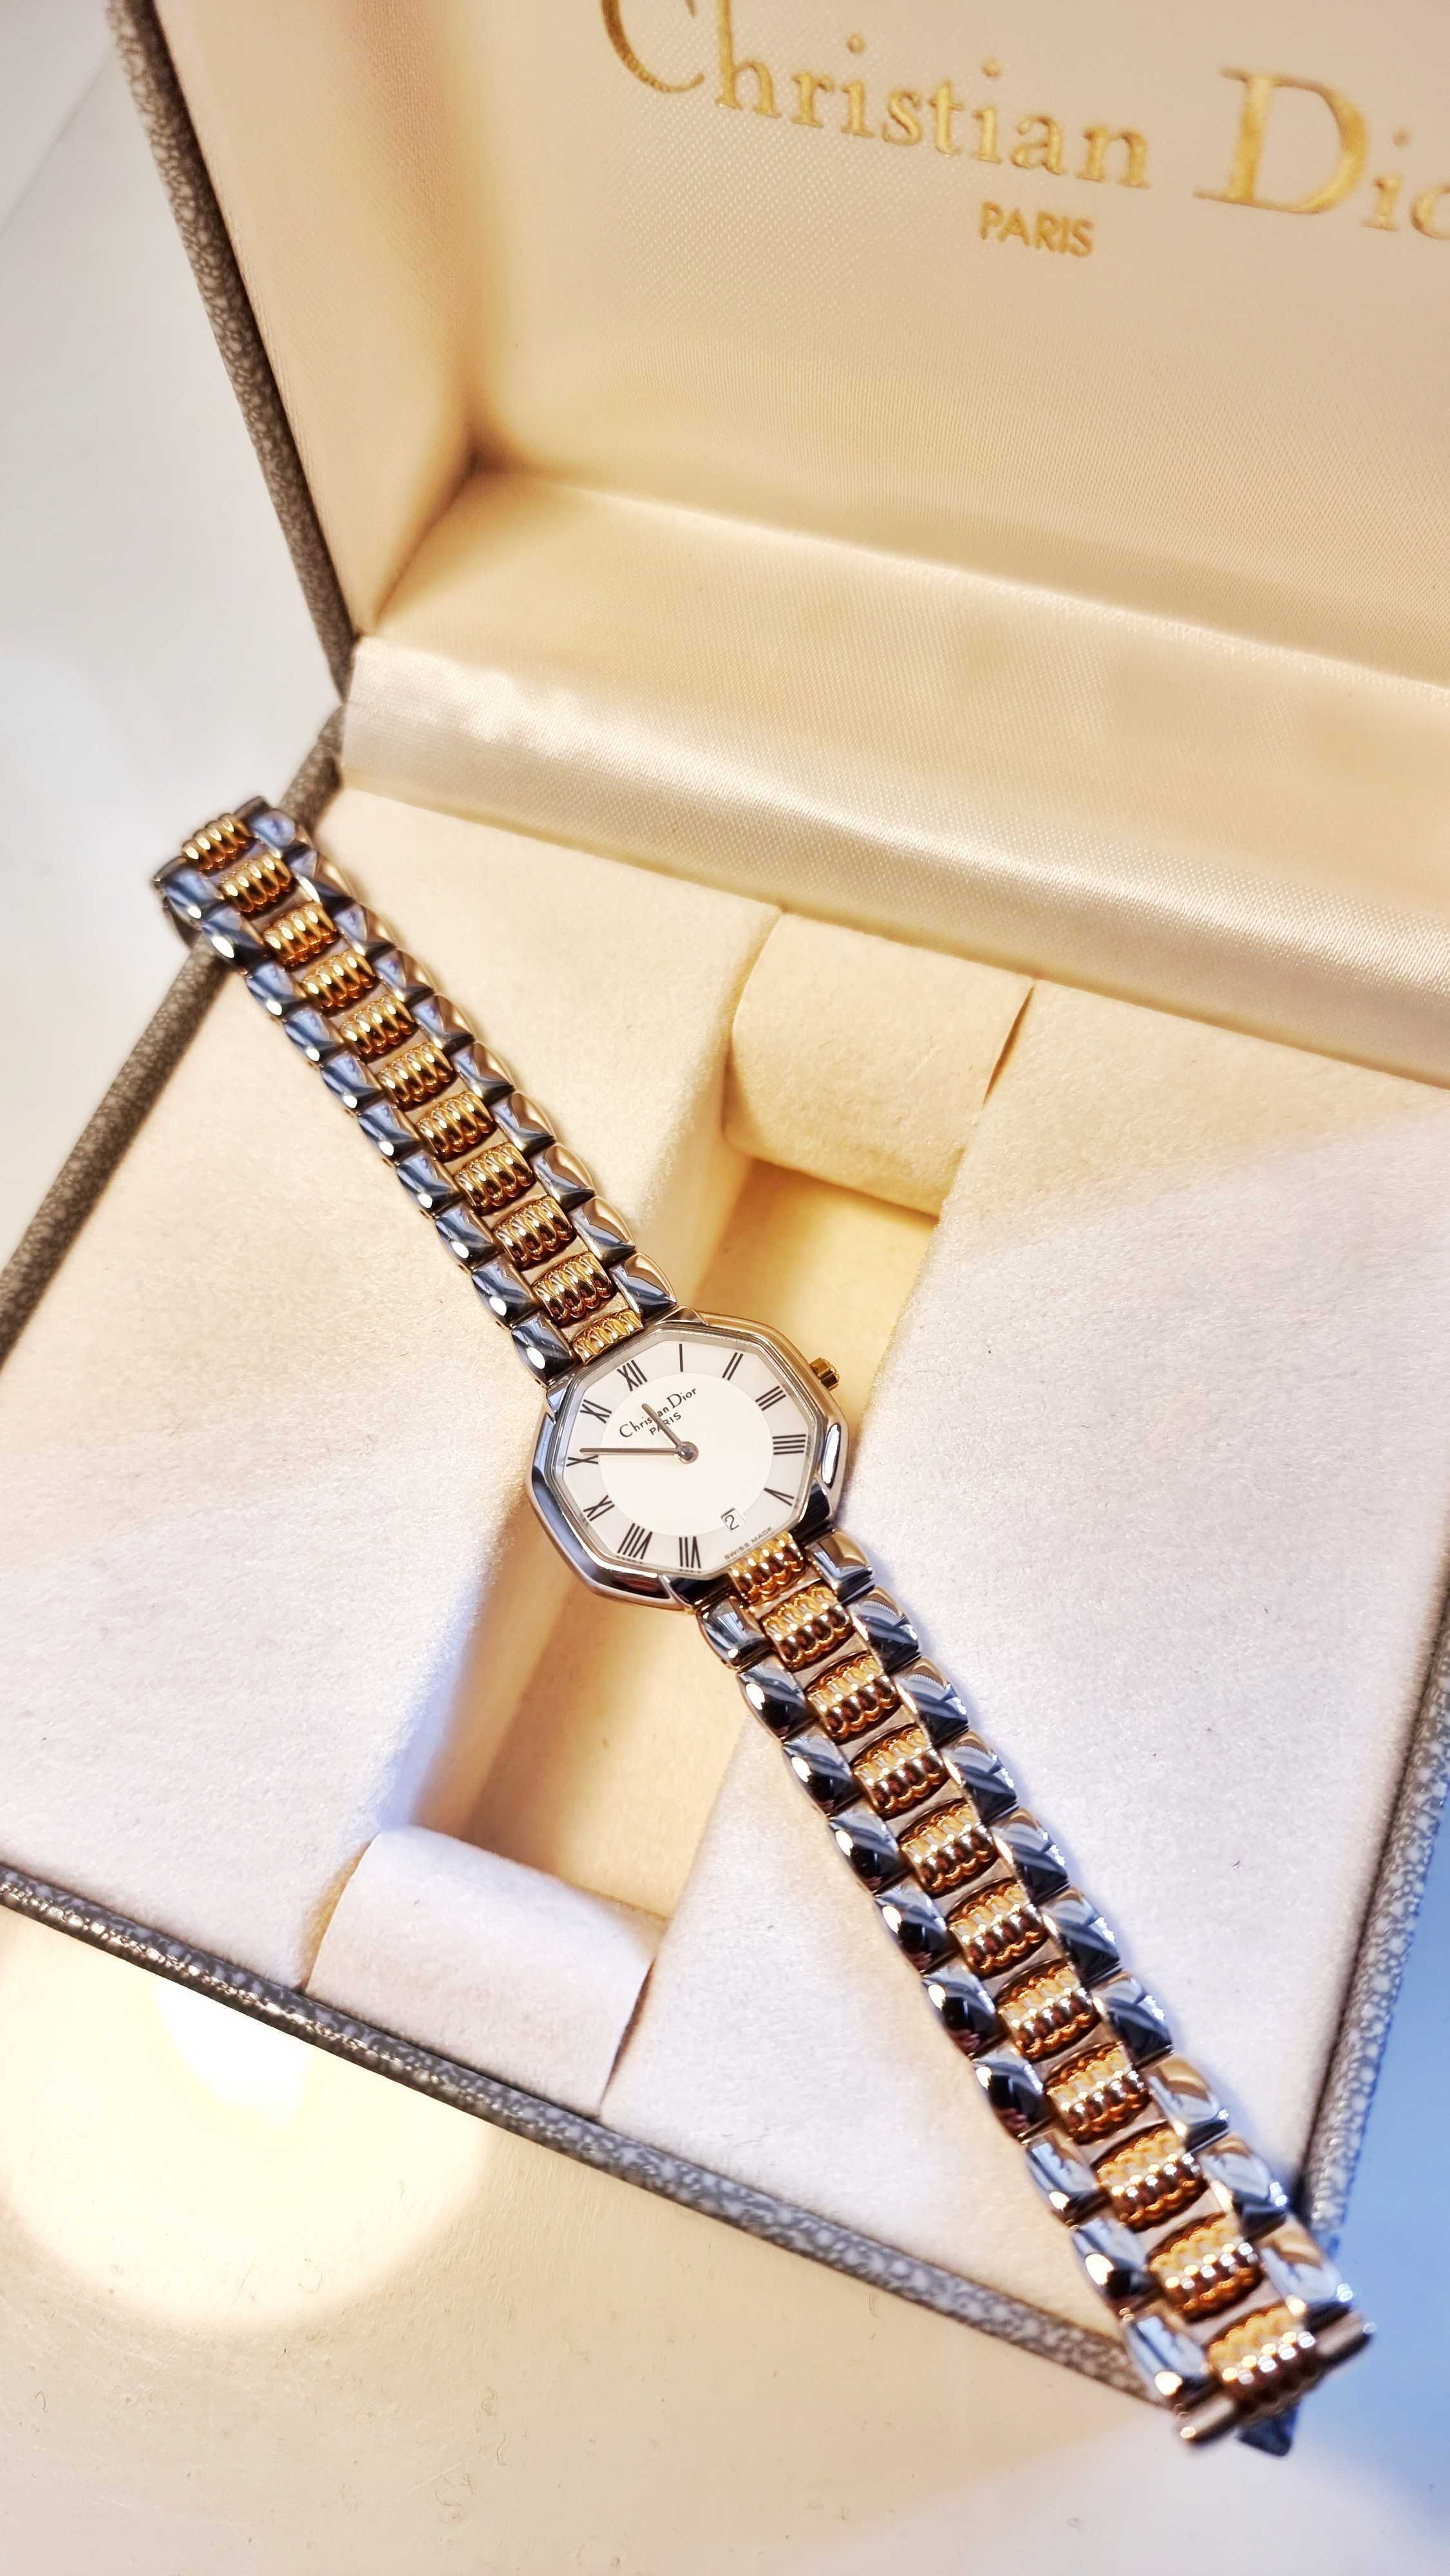 Relógio de Senhora Christian Dior Paris original na caixa